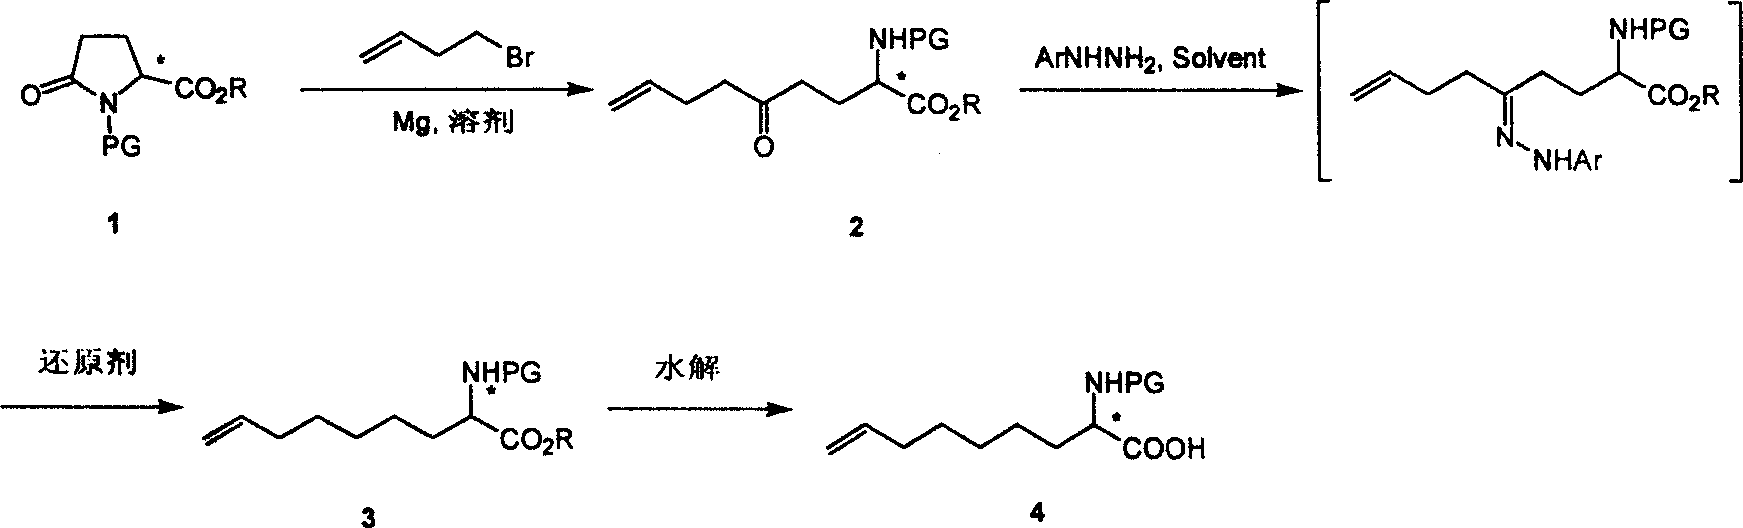 Method for practical synthesizing optically active 2 - amido - 8 - butenic acid